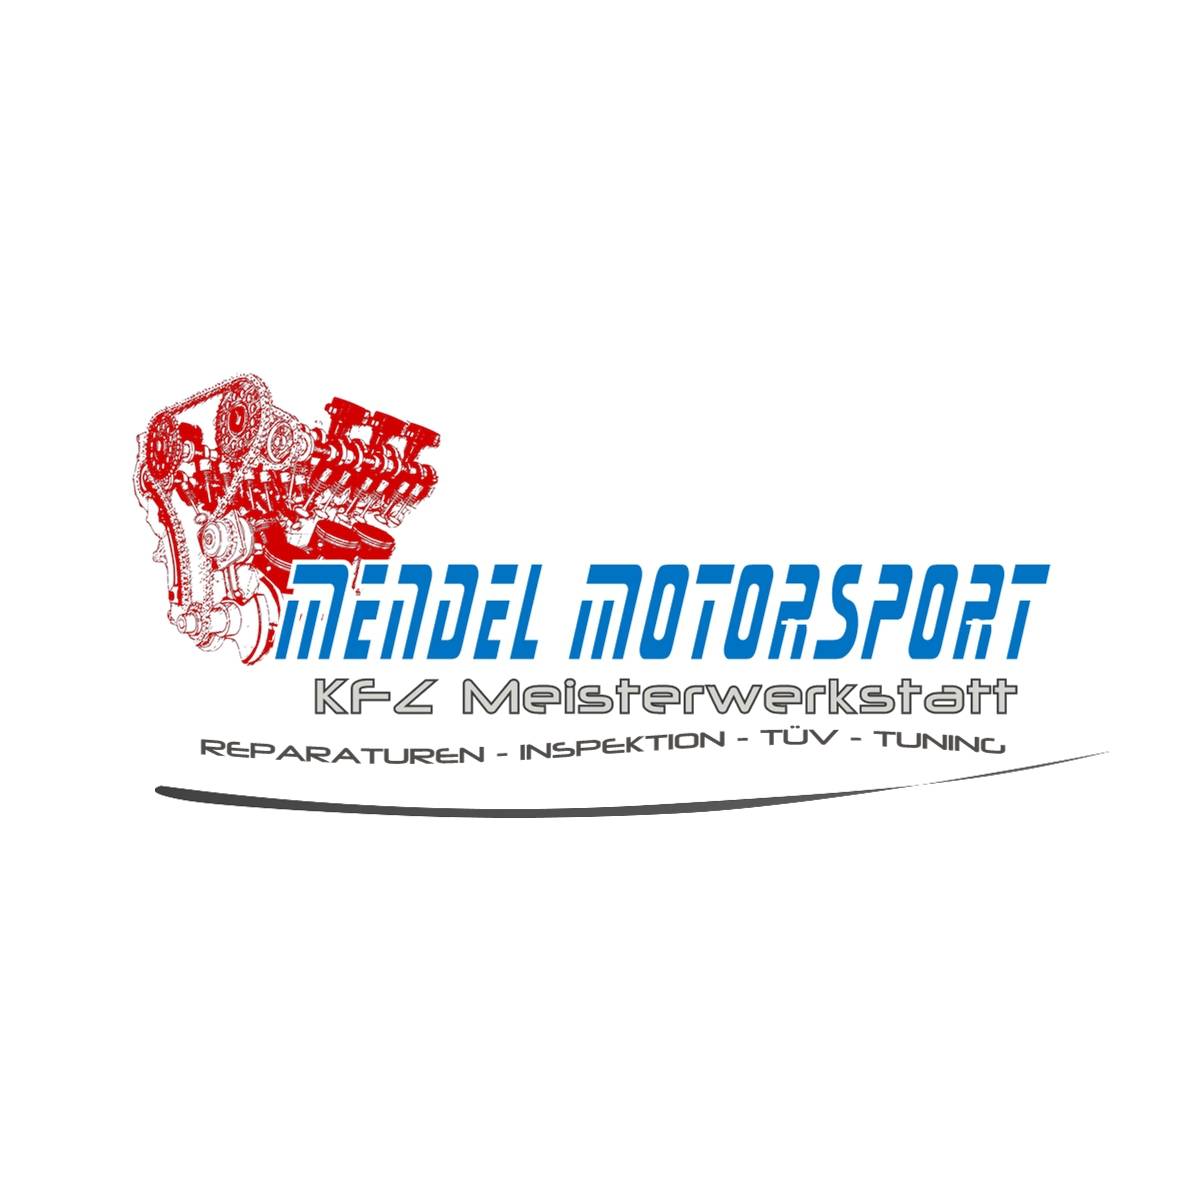 (c) Mendel-motorsport.de